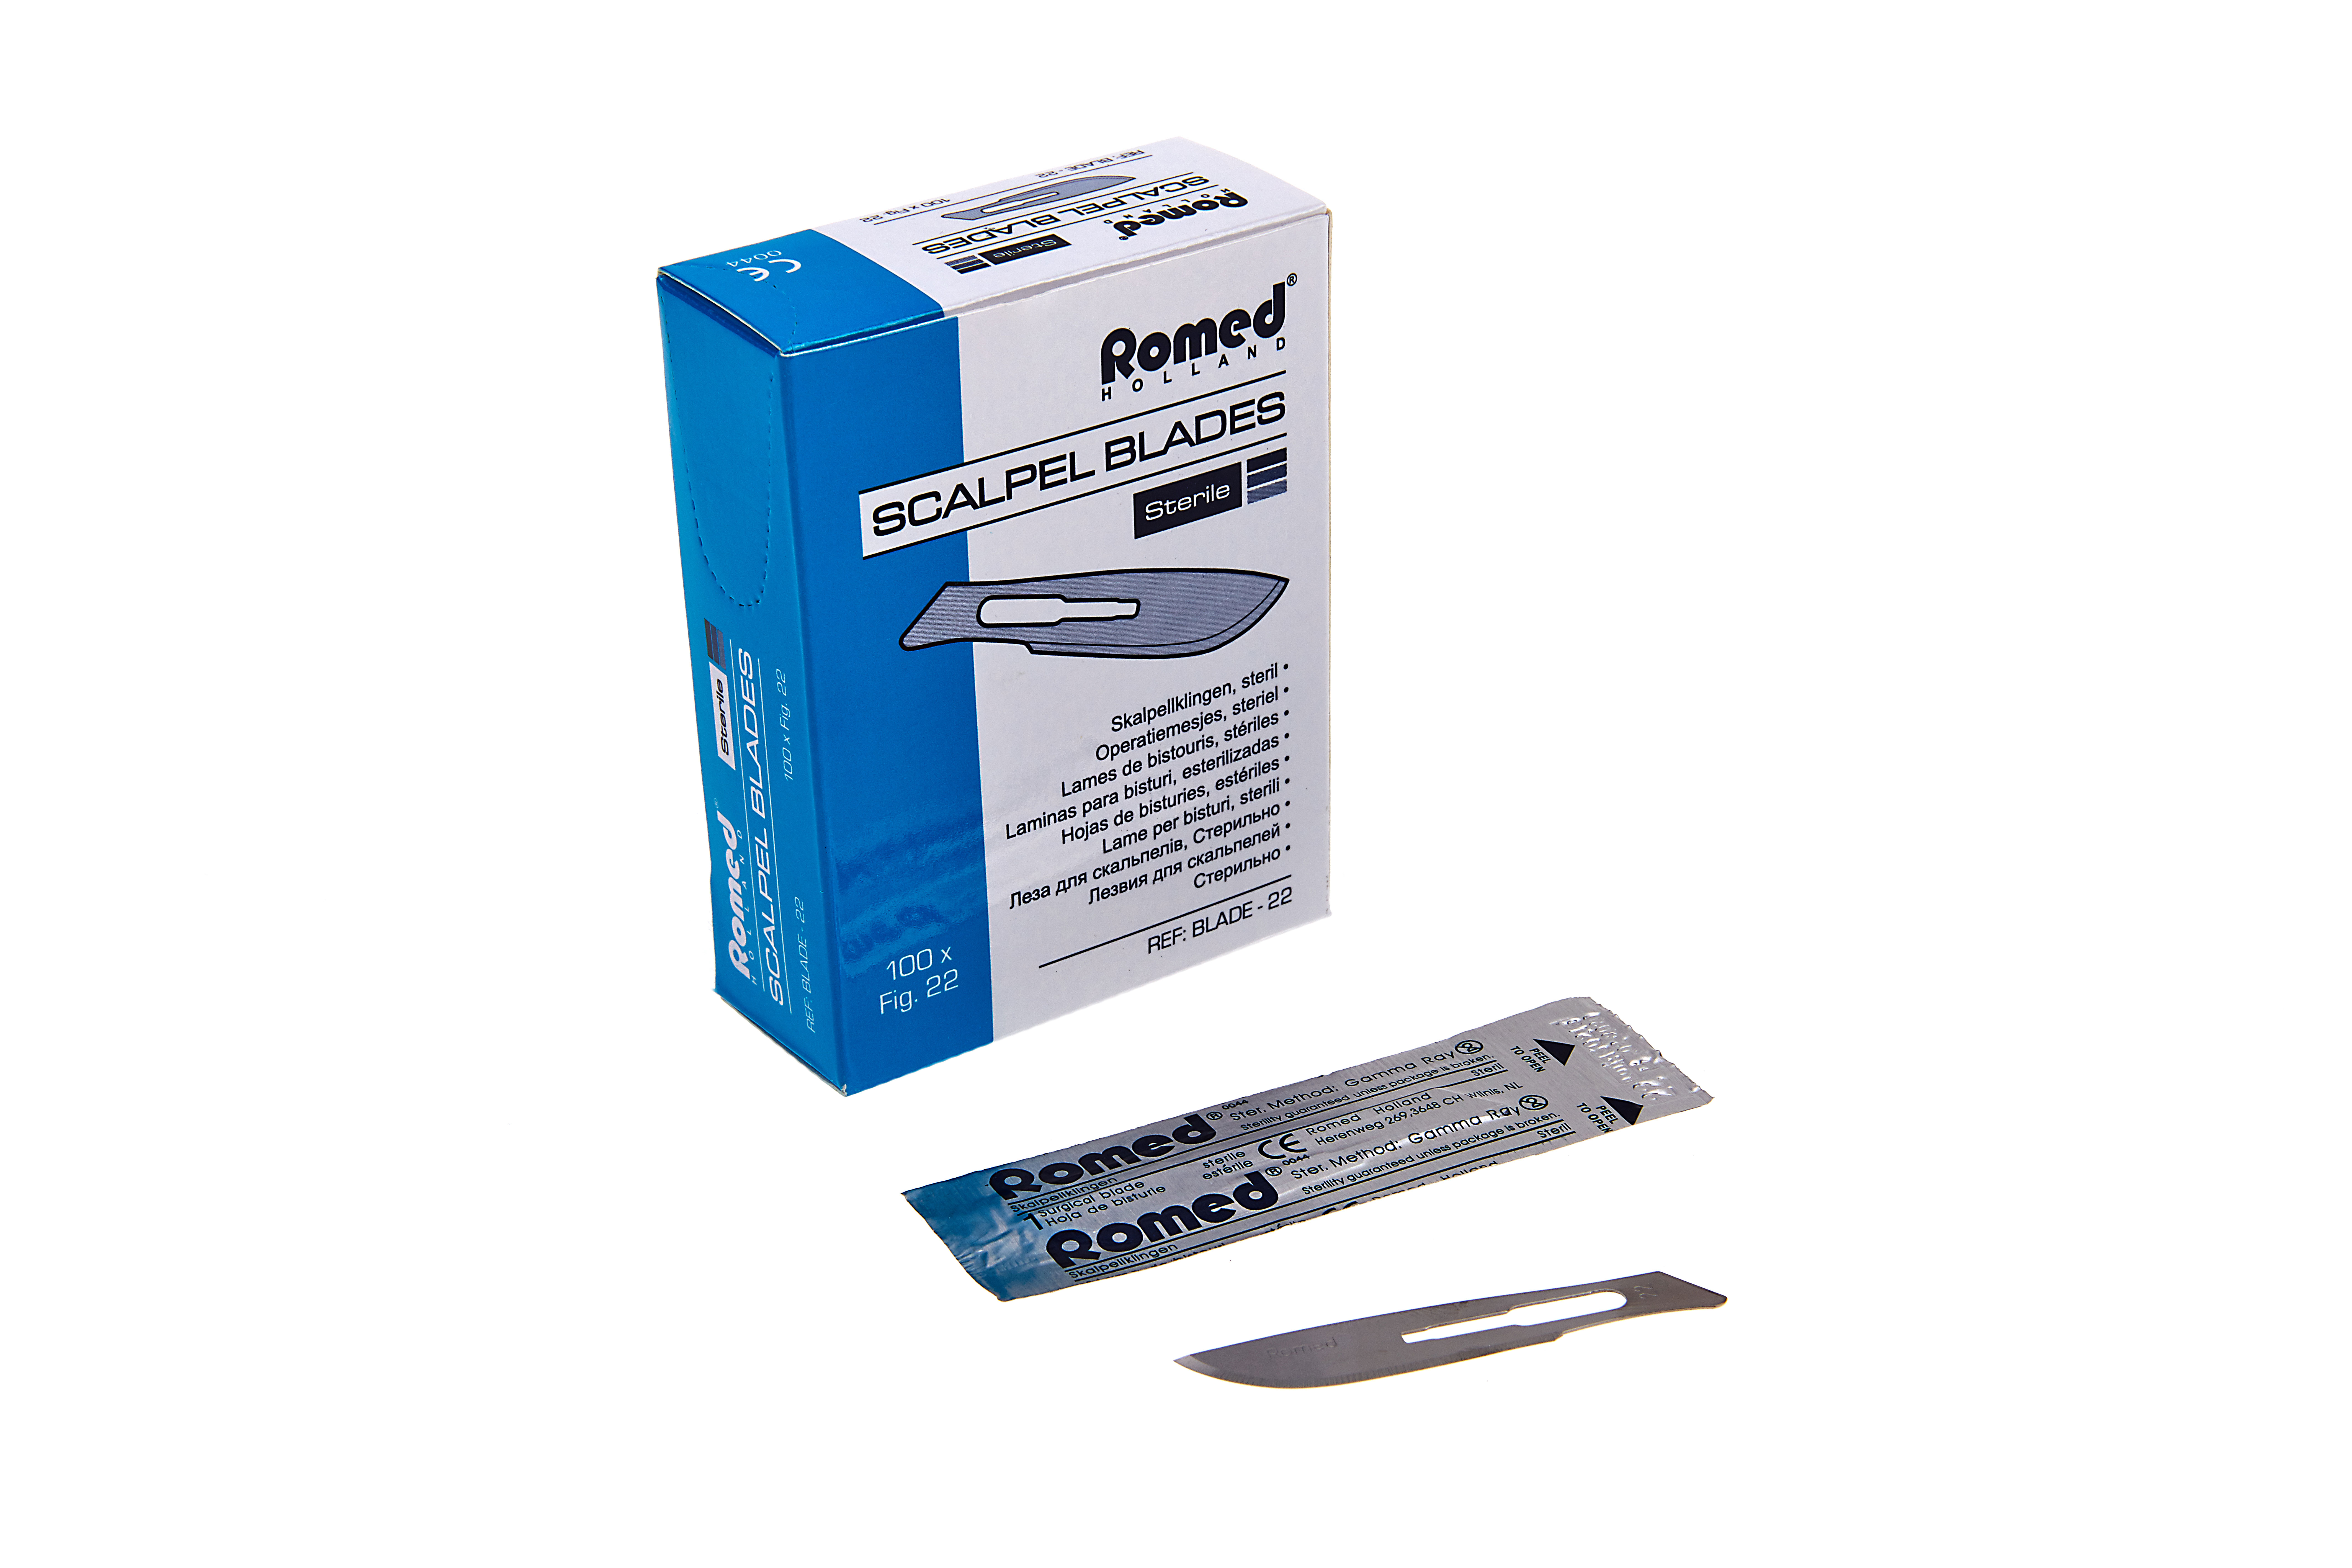 BLADE10 Lames de scalpel Romed, stériles, conditionnées individuellement, 100 unités par boîte intérieure, 50 x 100 unités = 5 000 unités par carton.